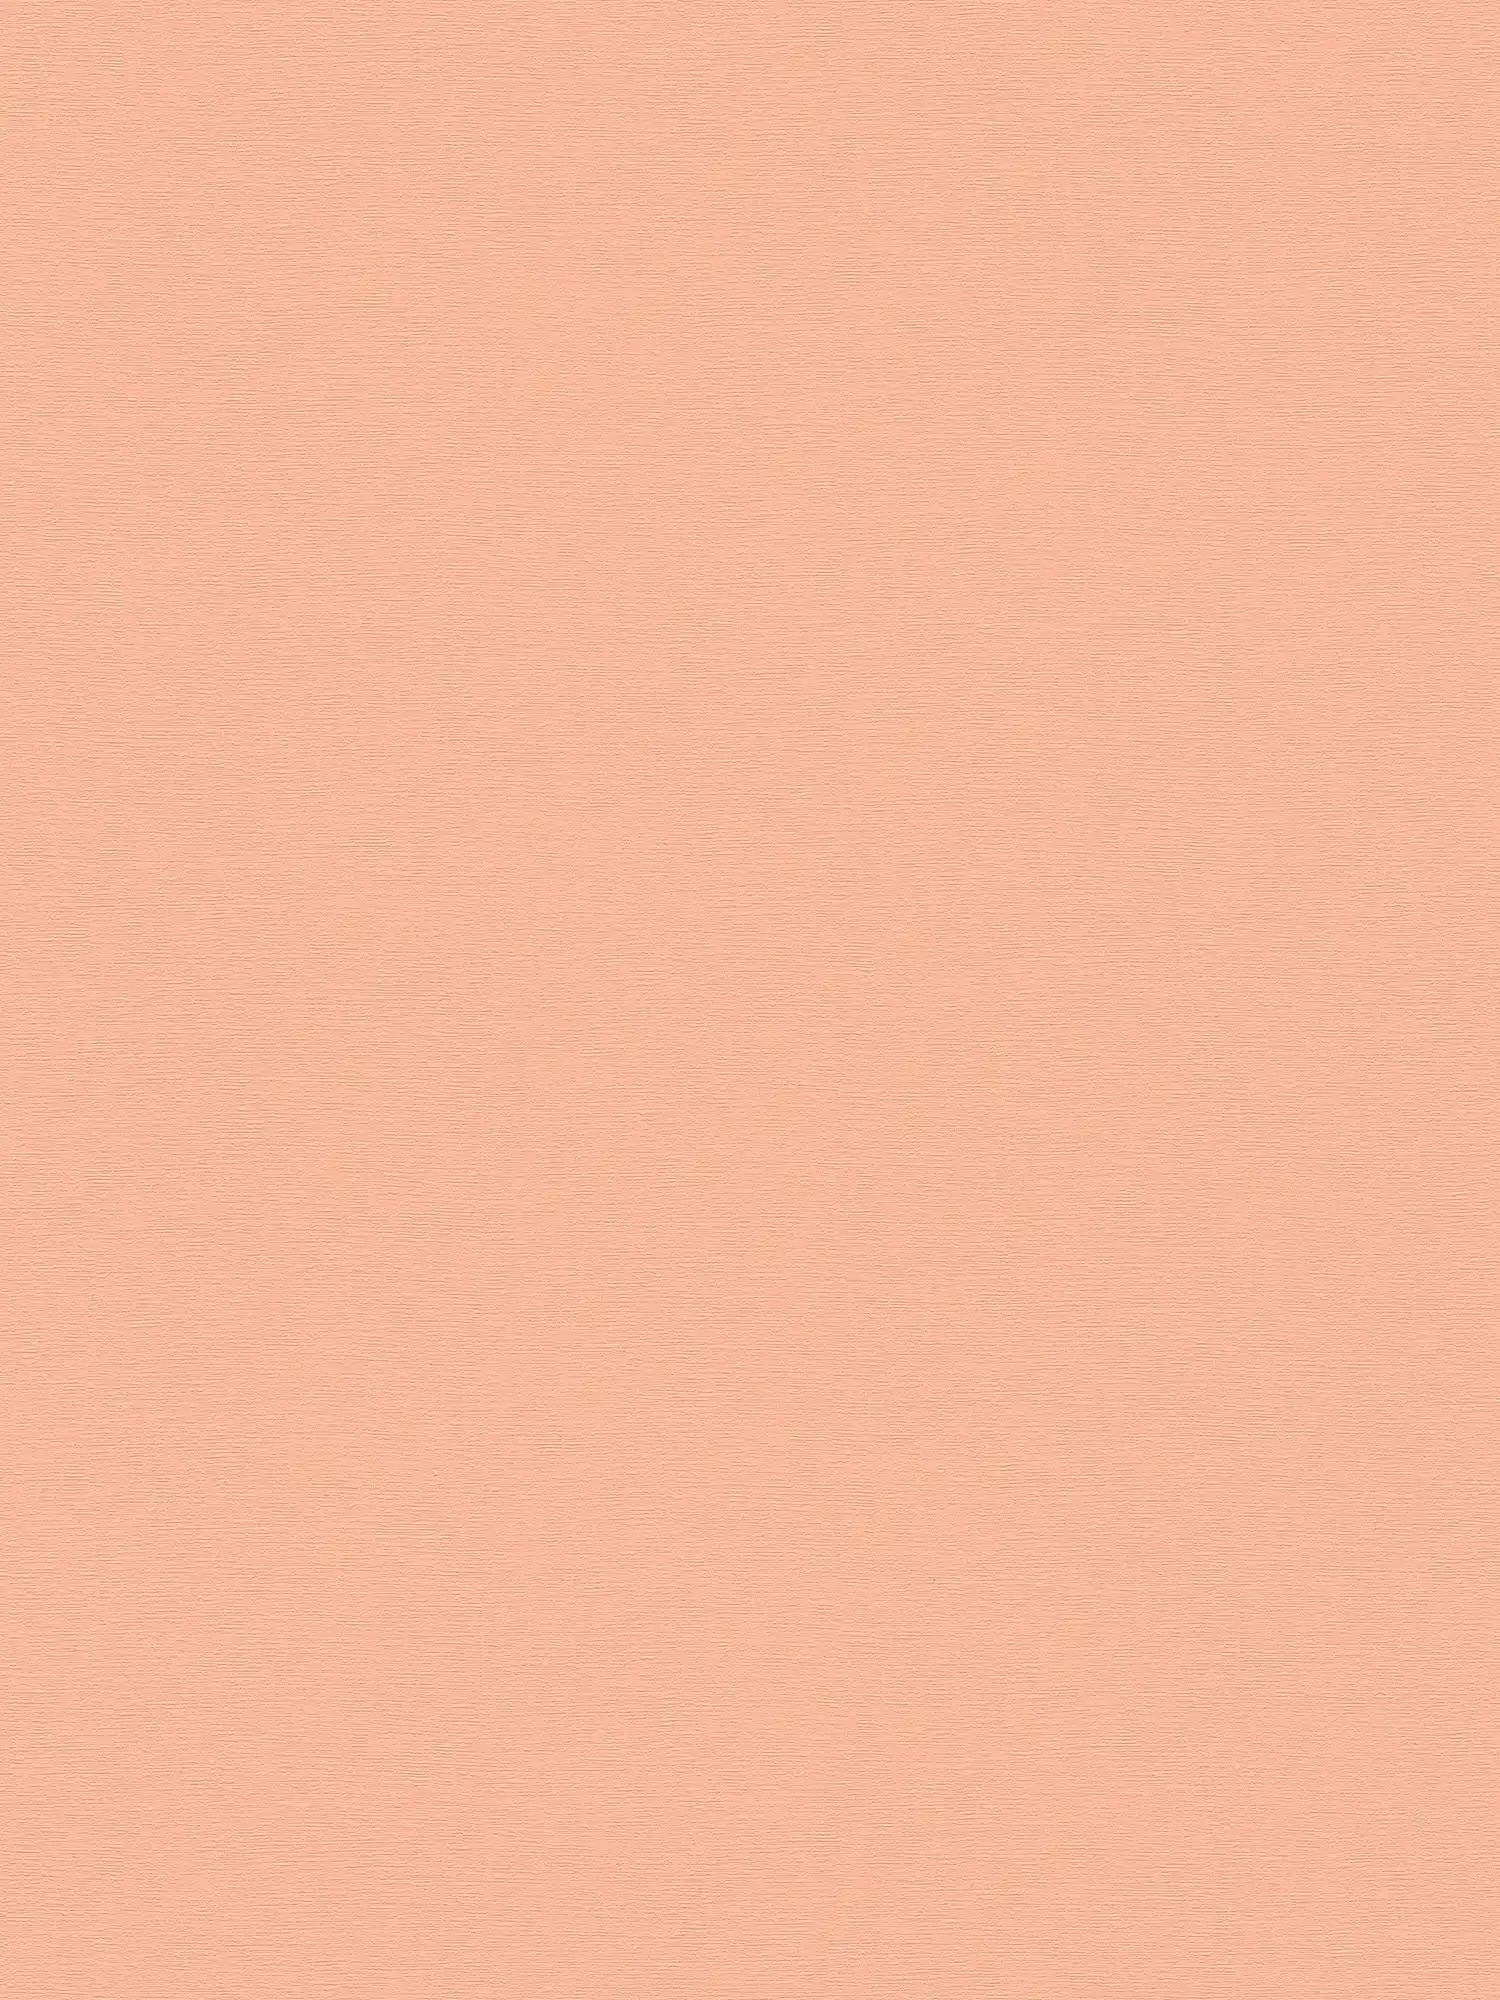 papier peint en papier intissé uni à texture douce - rose
